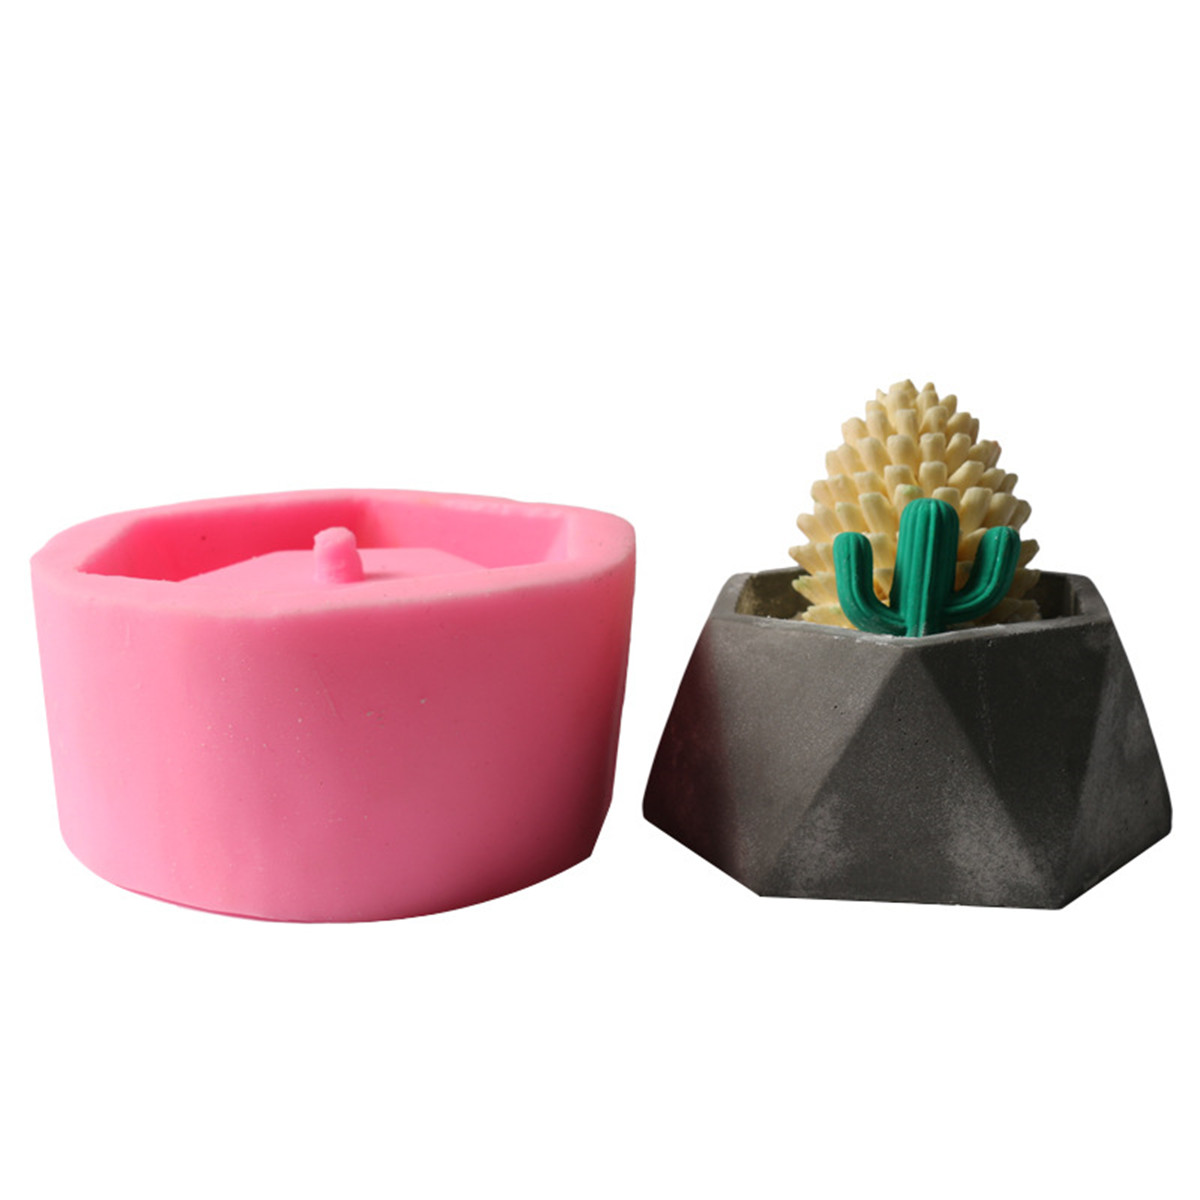 Handmade-Silicone-Flower-Pot-Mould-3D-Geometric-Concrete-Succulent-Planter-Craft-1289100